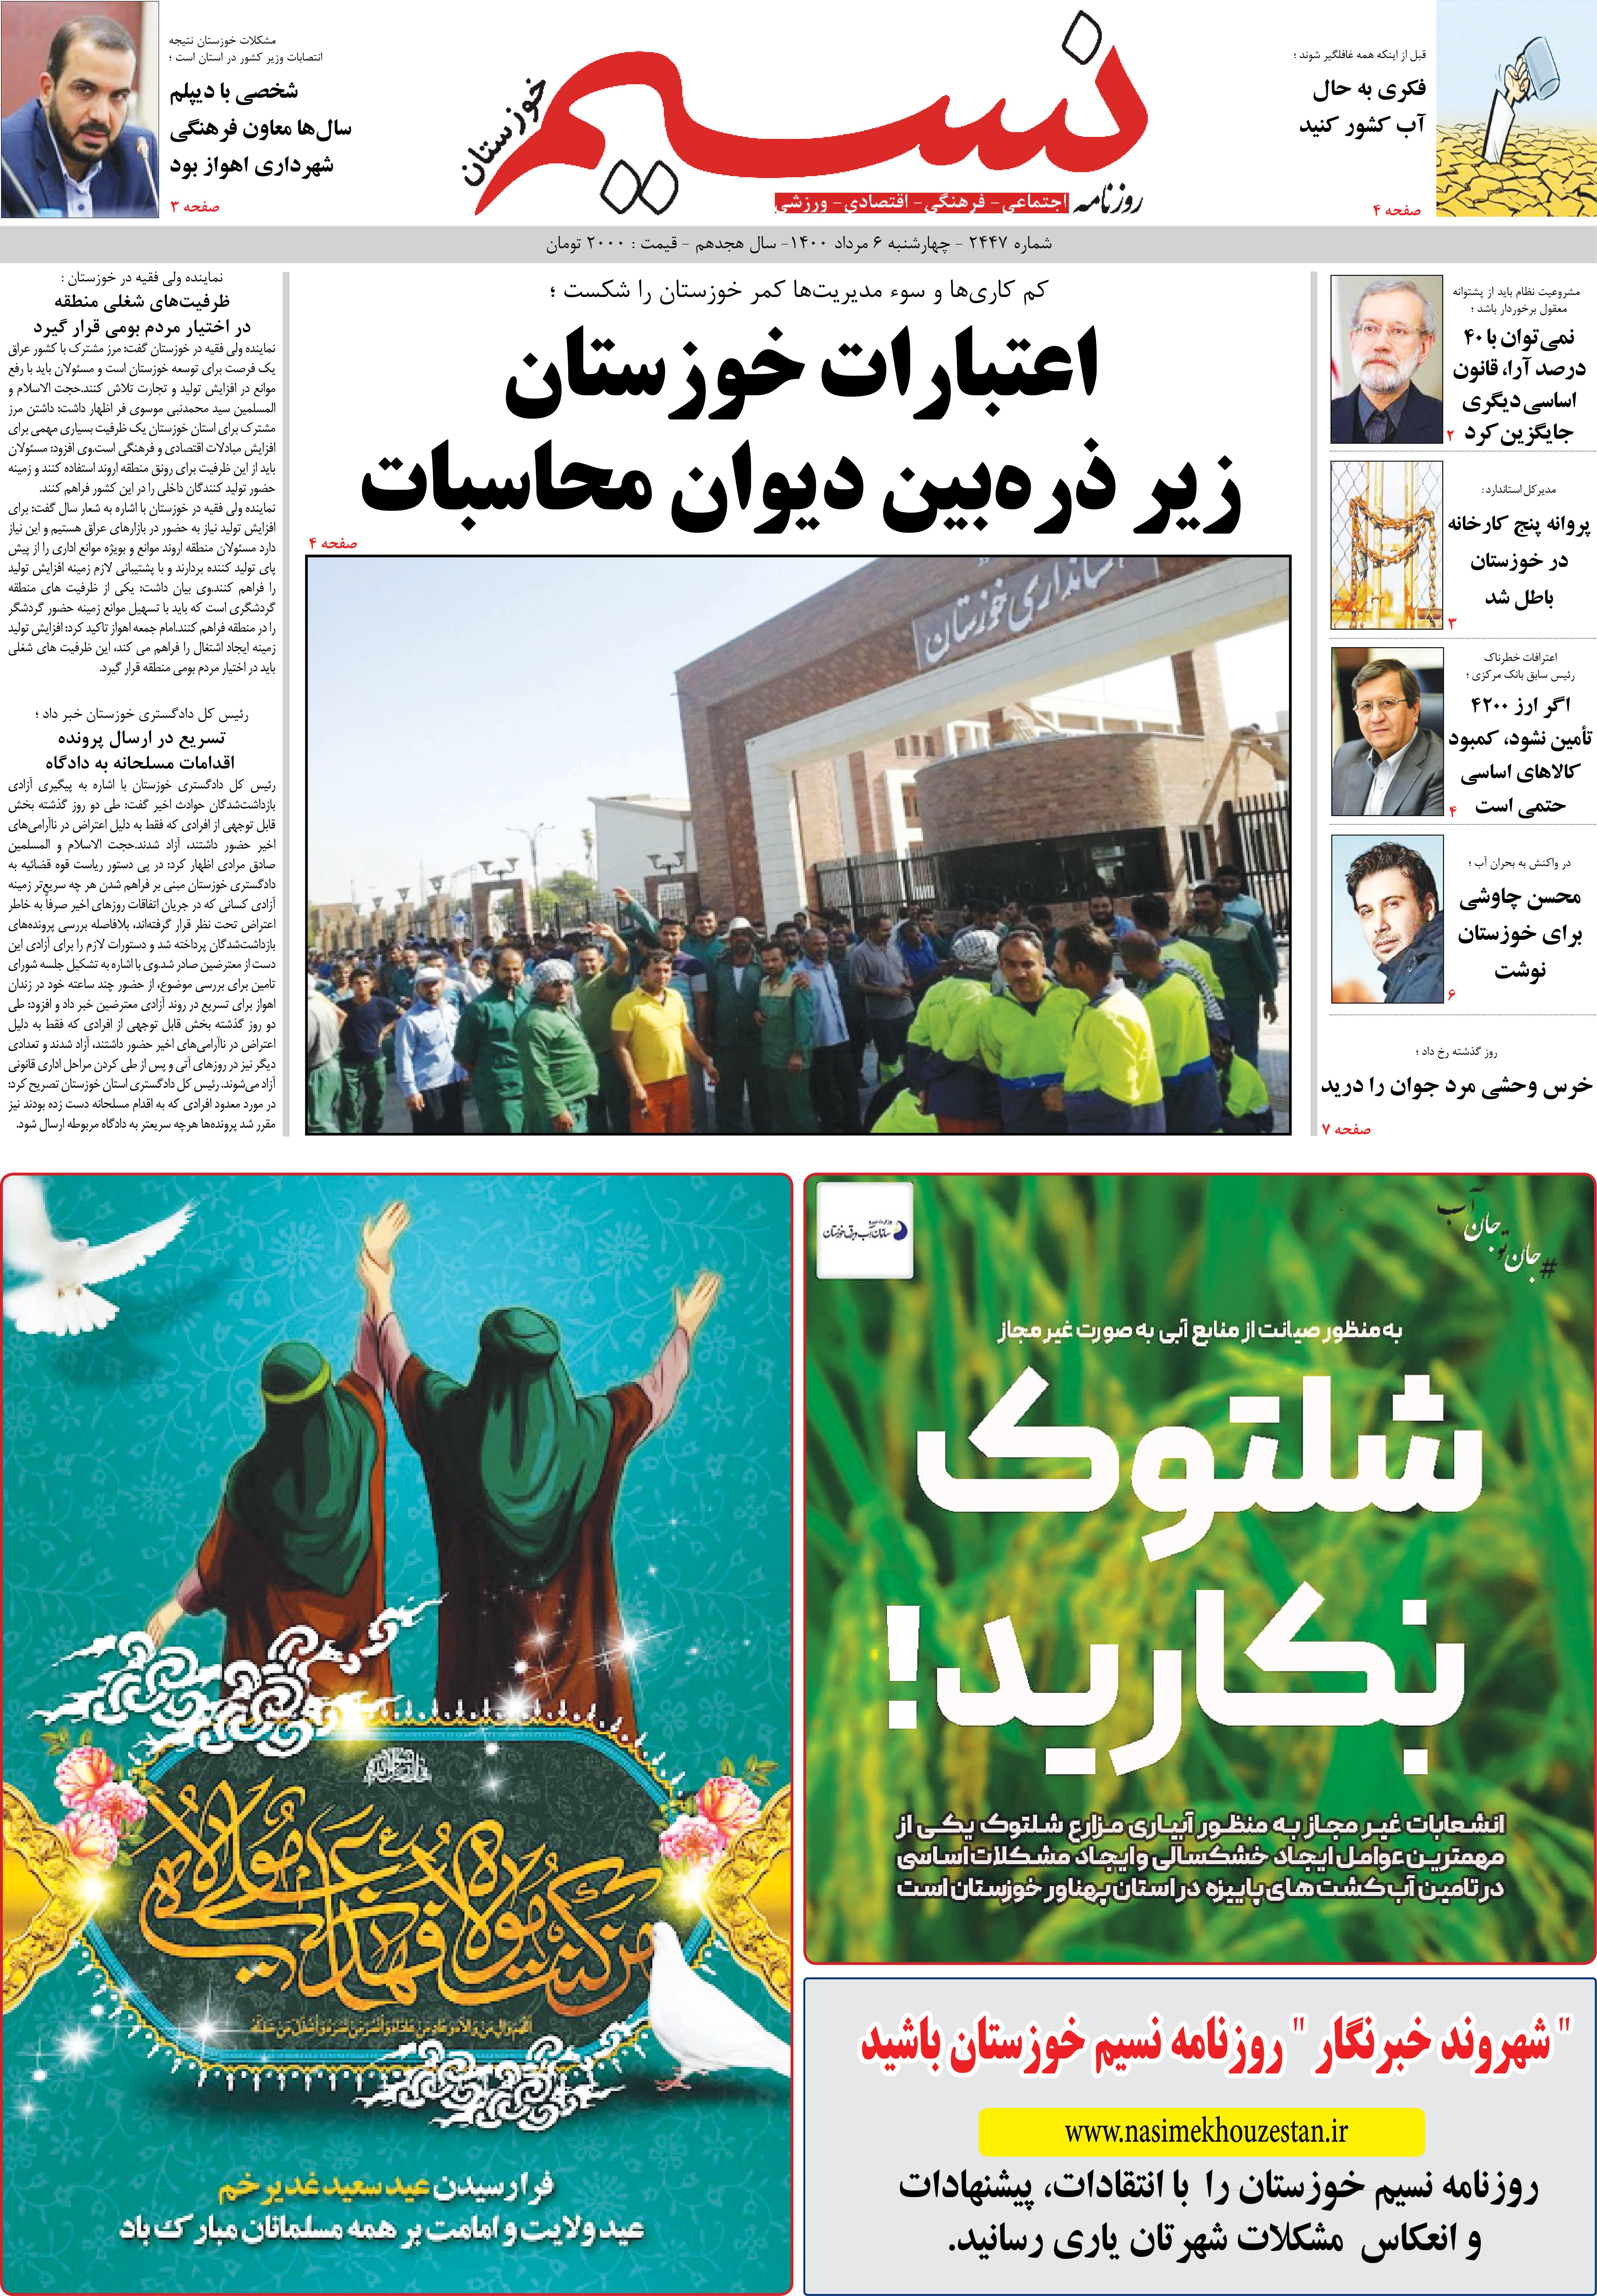 صفحه اصلی روزنامه نسیم شماره 2447 